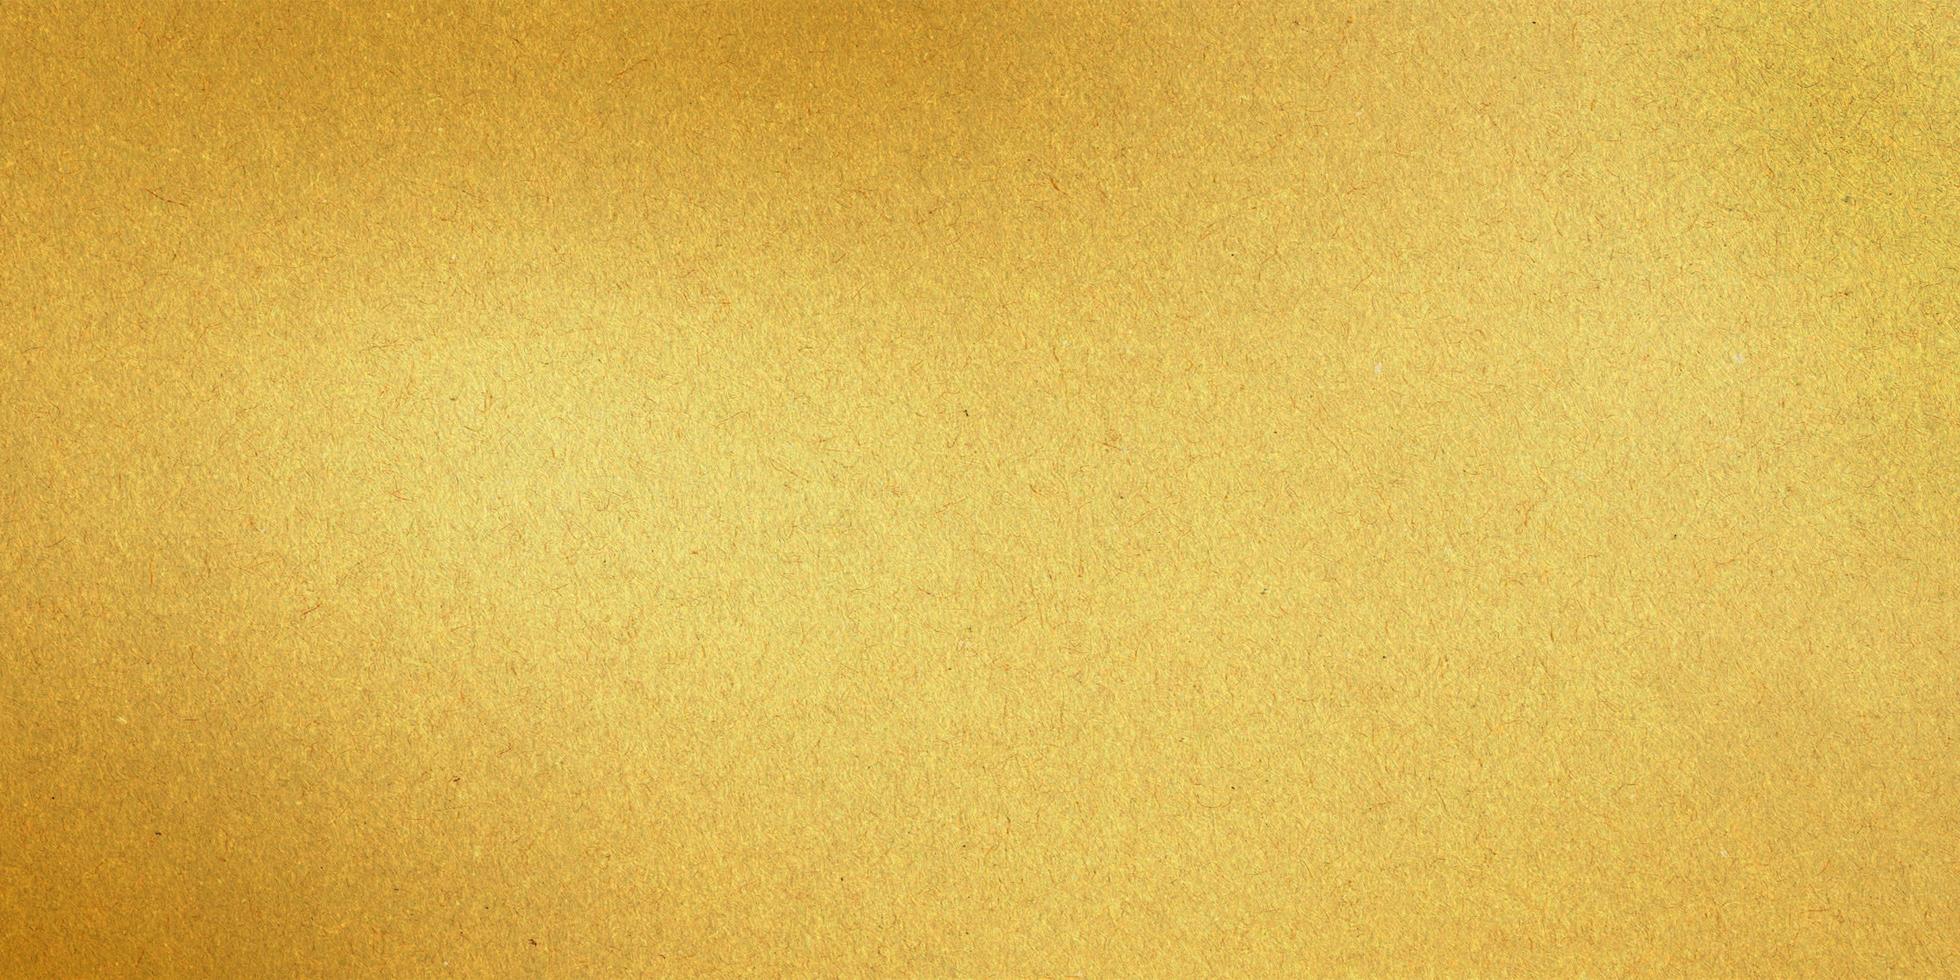 Compartir 75+ fondo dorado metalico última - camera.edu.vn